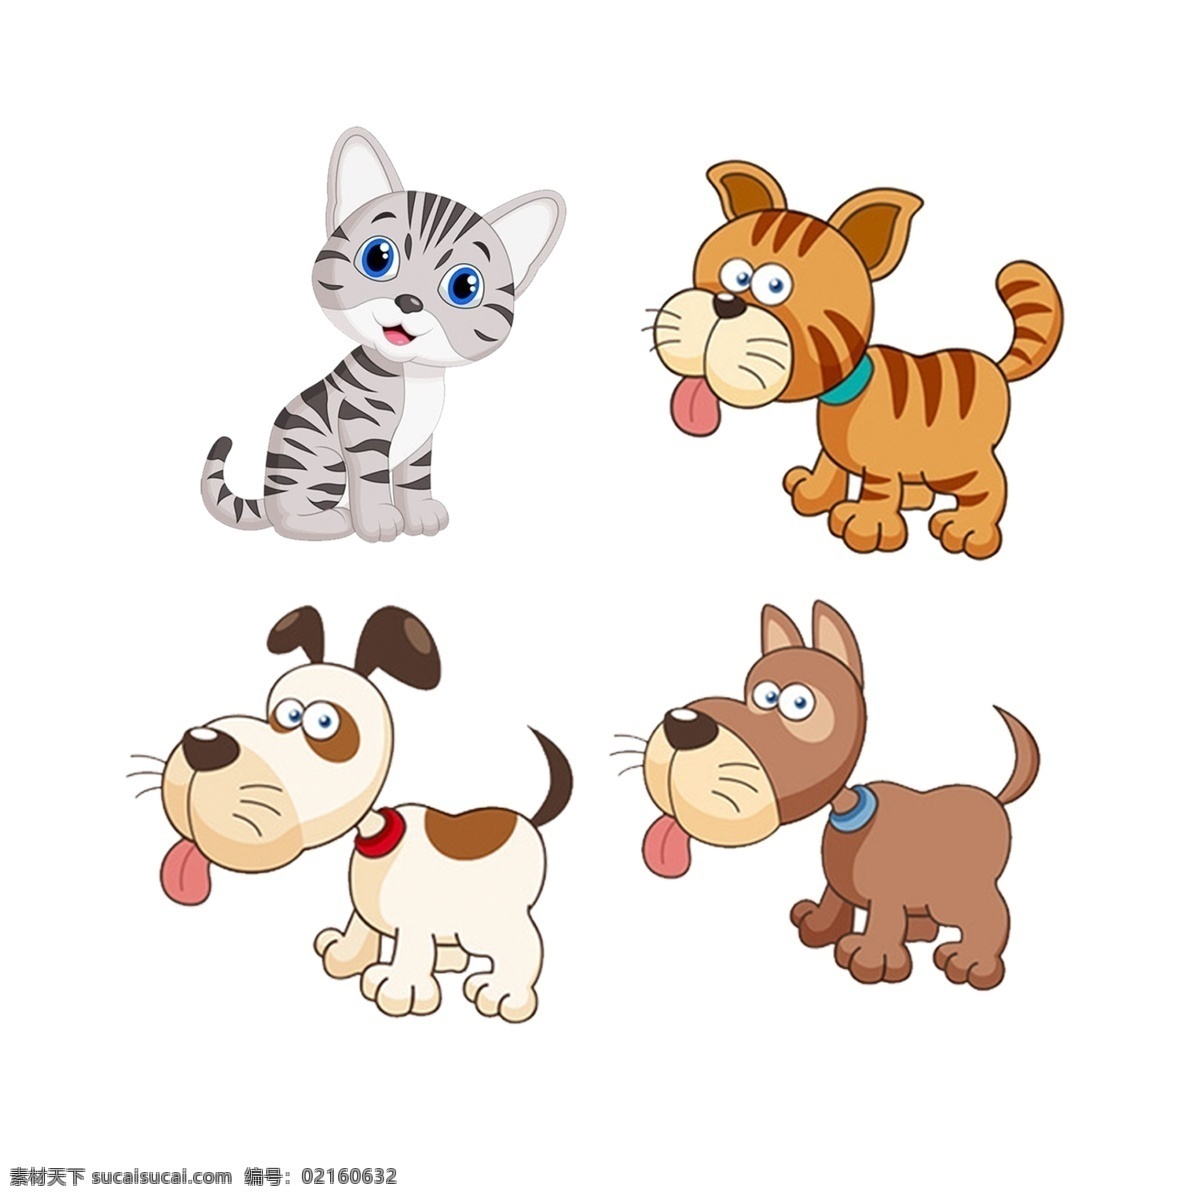 卡通猫狗素材 卡通猫 卡通狗 宠物猫 宠物狗 可爱卡通 卡通动物 卡通设计